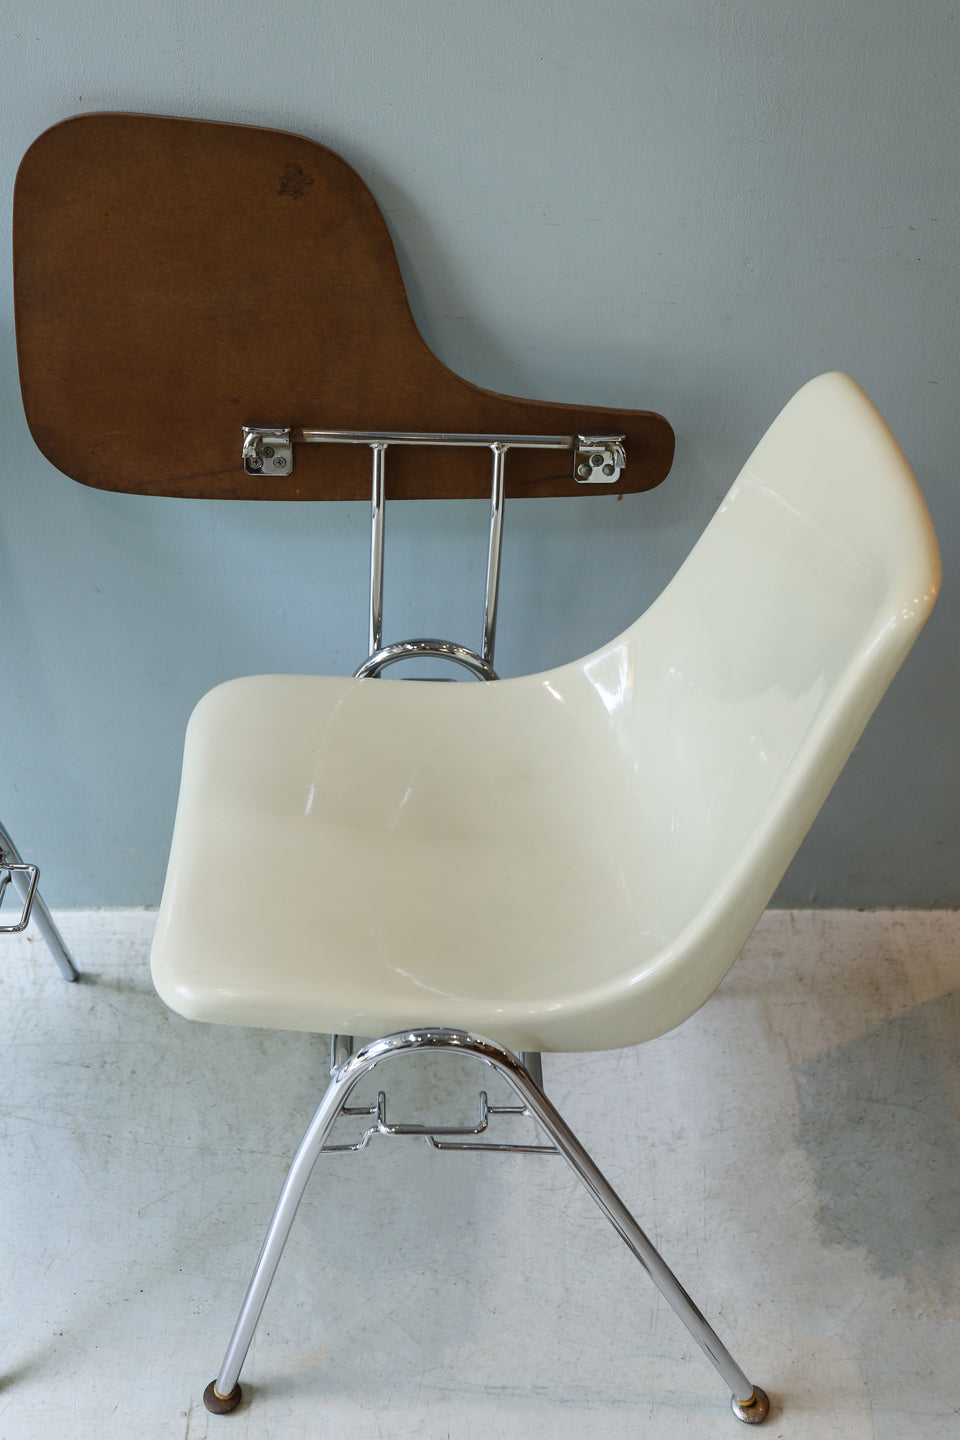 Japanese Vintage Kotobuki Shell Chair/ジャパンヴィンテージ コトブキ スタッキングシェルチェア